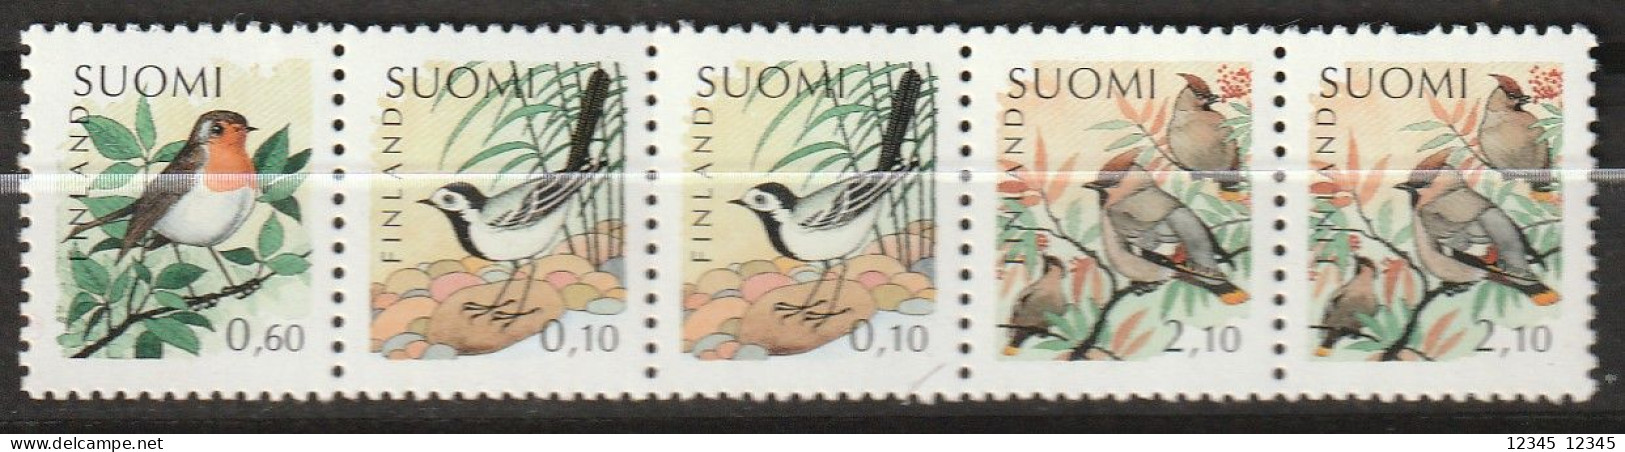 Finland 1992, Postfris MNH, Birds - Postzegelboekjes